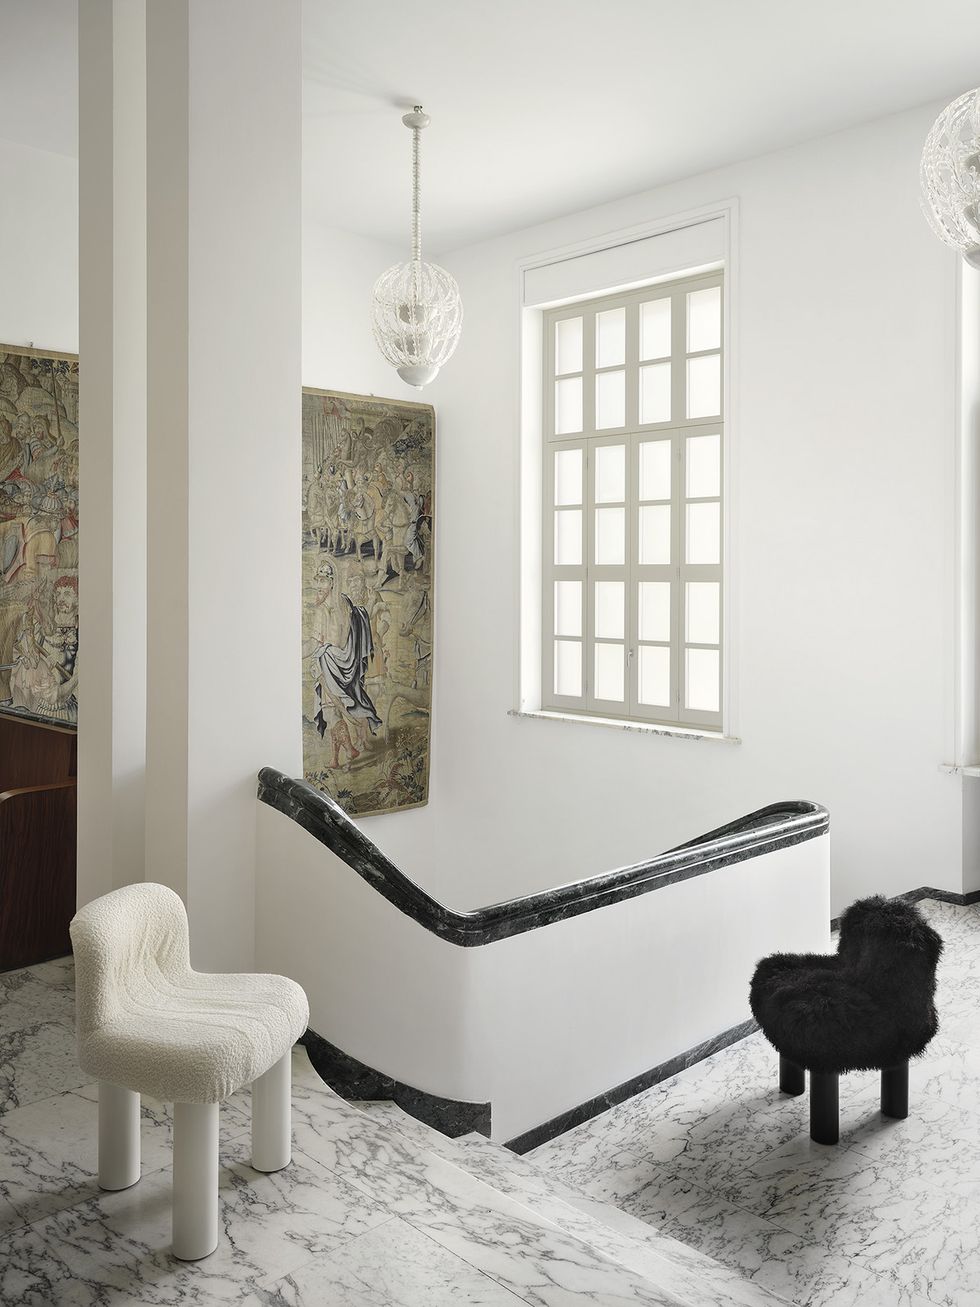 Interno della sala luminosa con camino moderno, poltrona e decorazioni  autunnali · Creative Fabrica